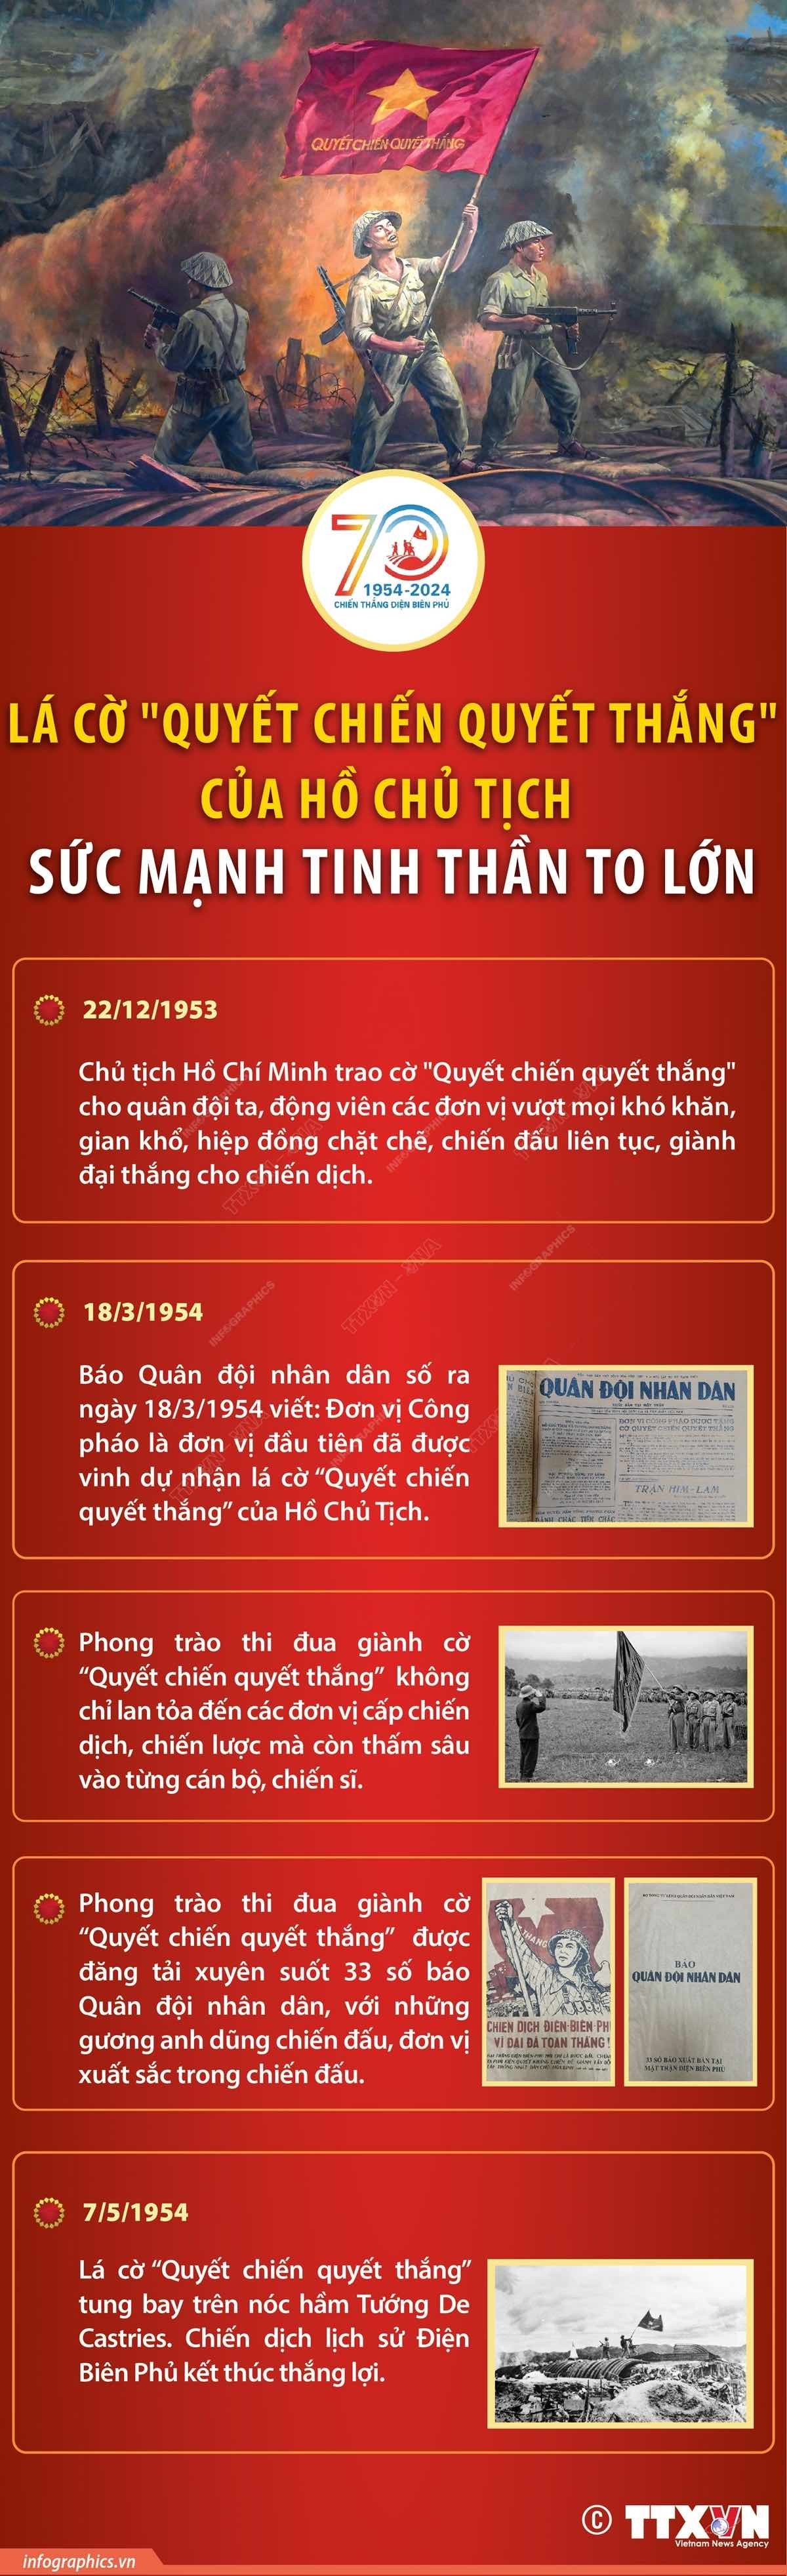 Lá cờ 'Quyết chiến quyết thắng' của Chủ tịch Hồ Chí Minh - sức mạnh tinh thần to lớn